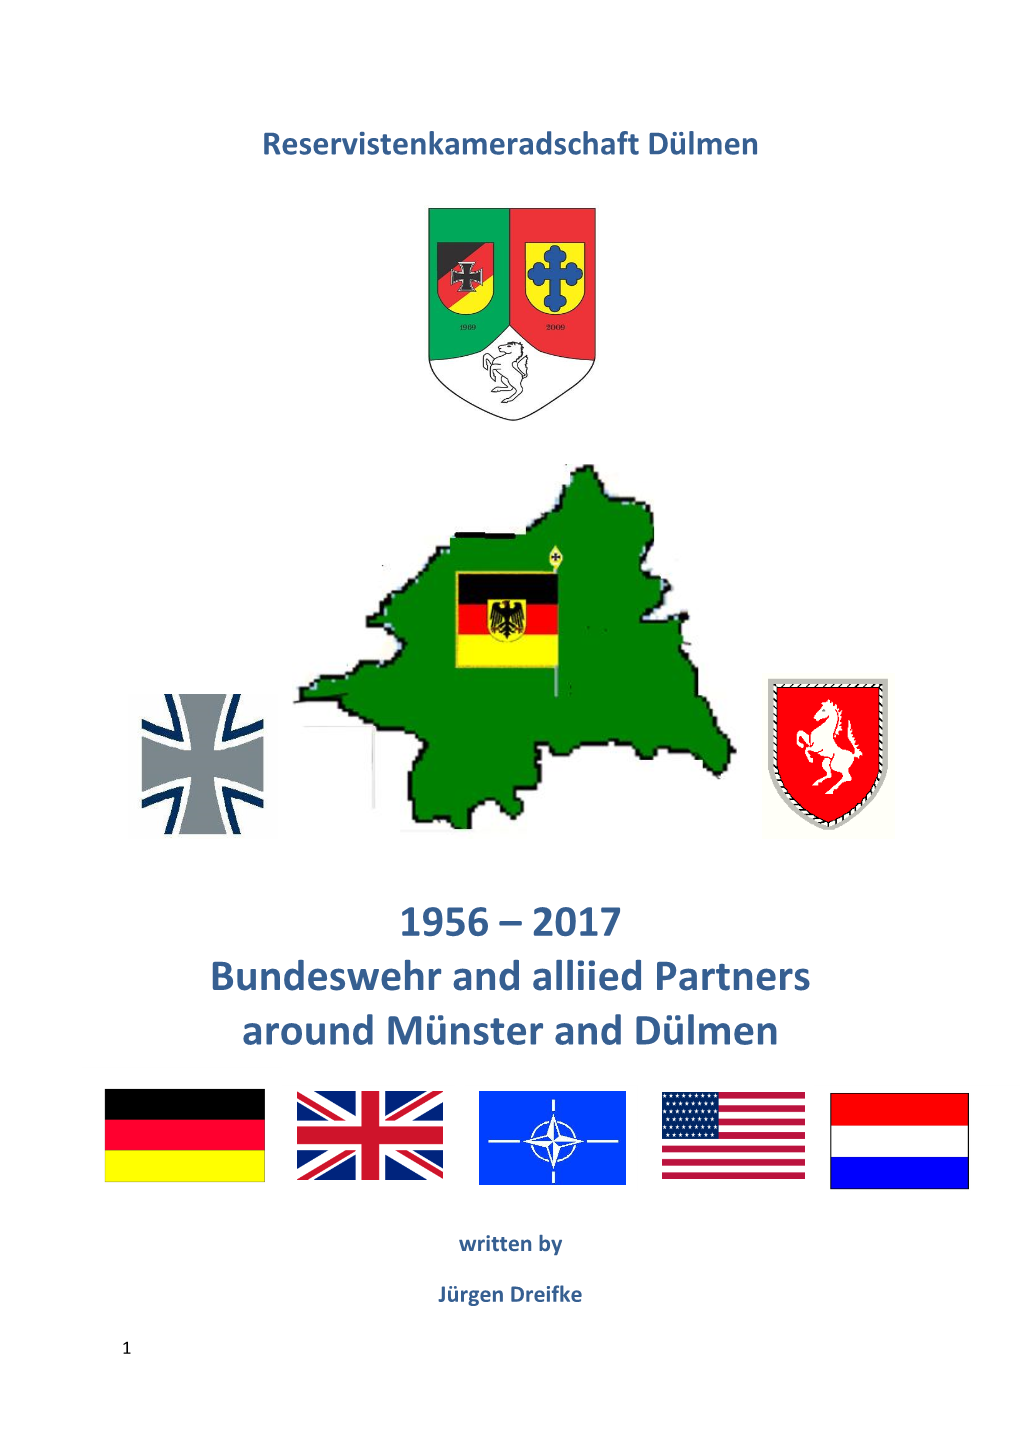 1956 – 2017 Bundeswehr and Alliied Partners Around Münster and Dülmen